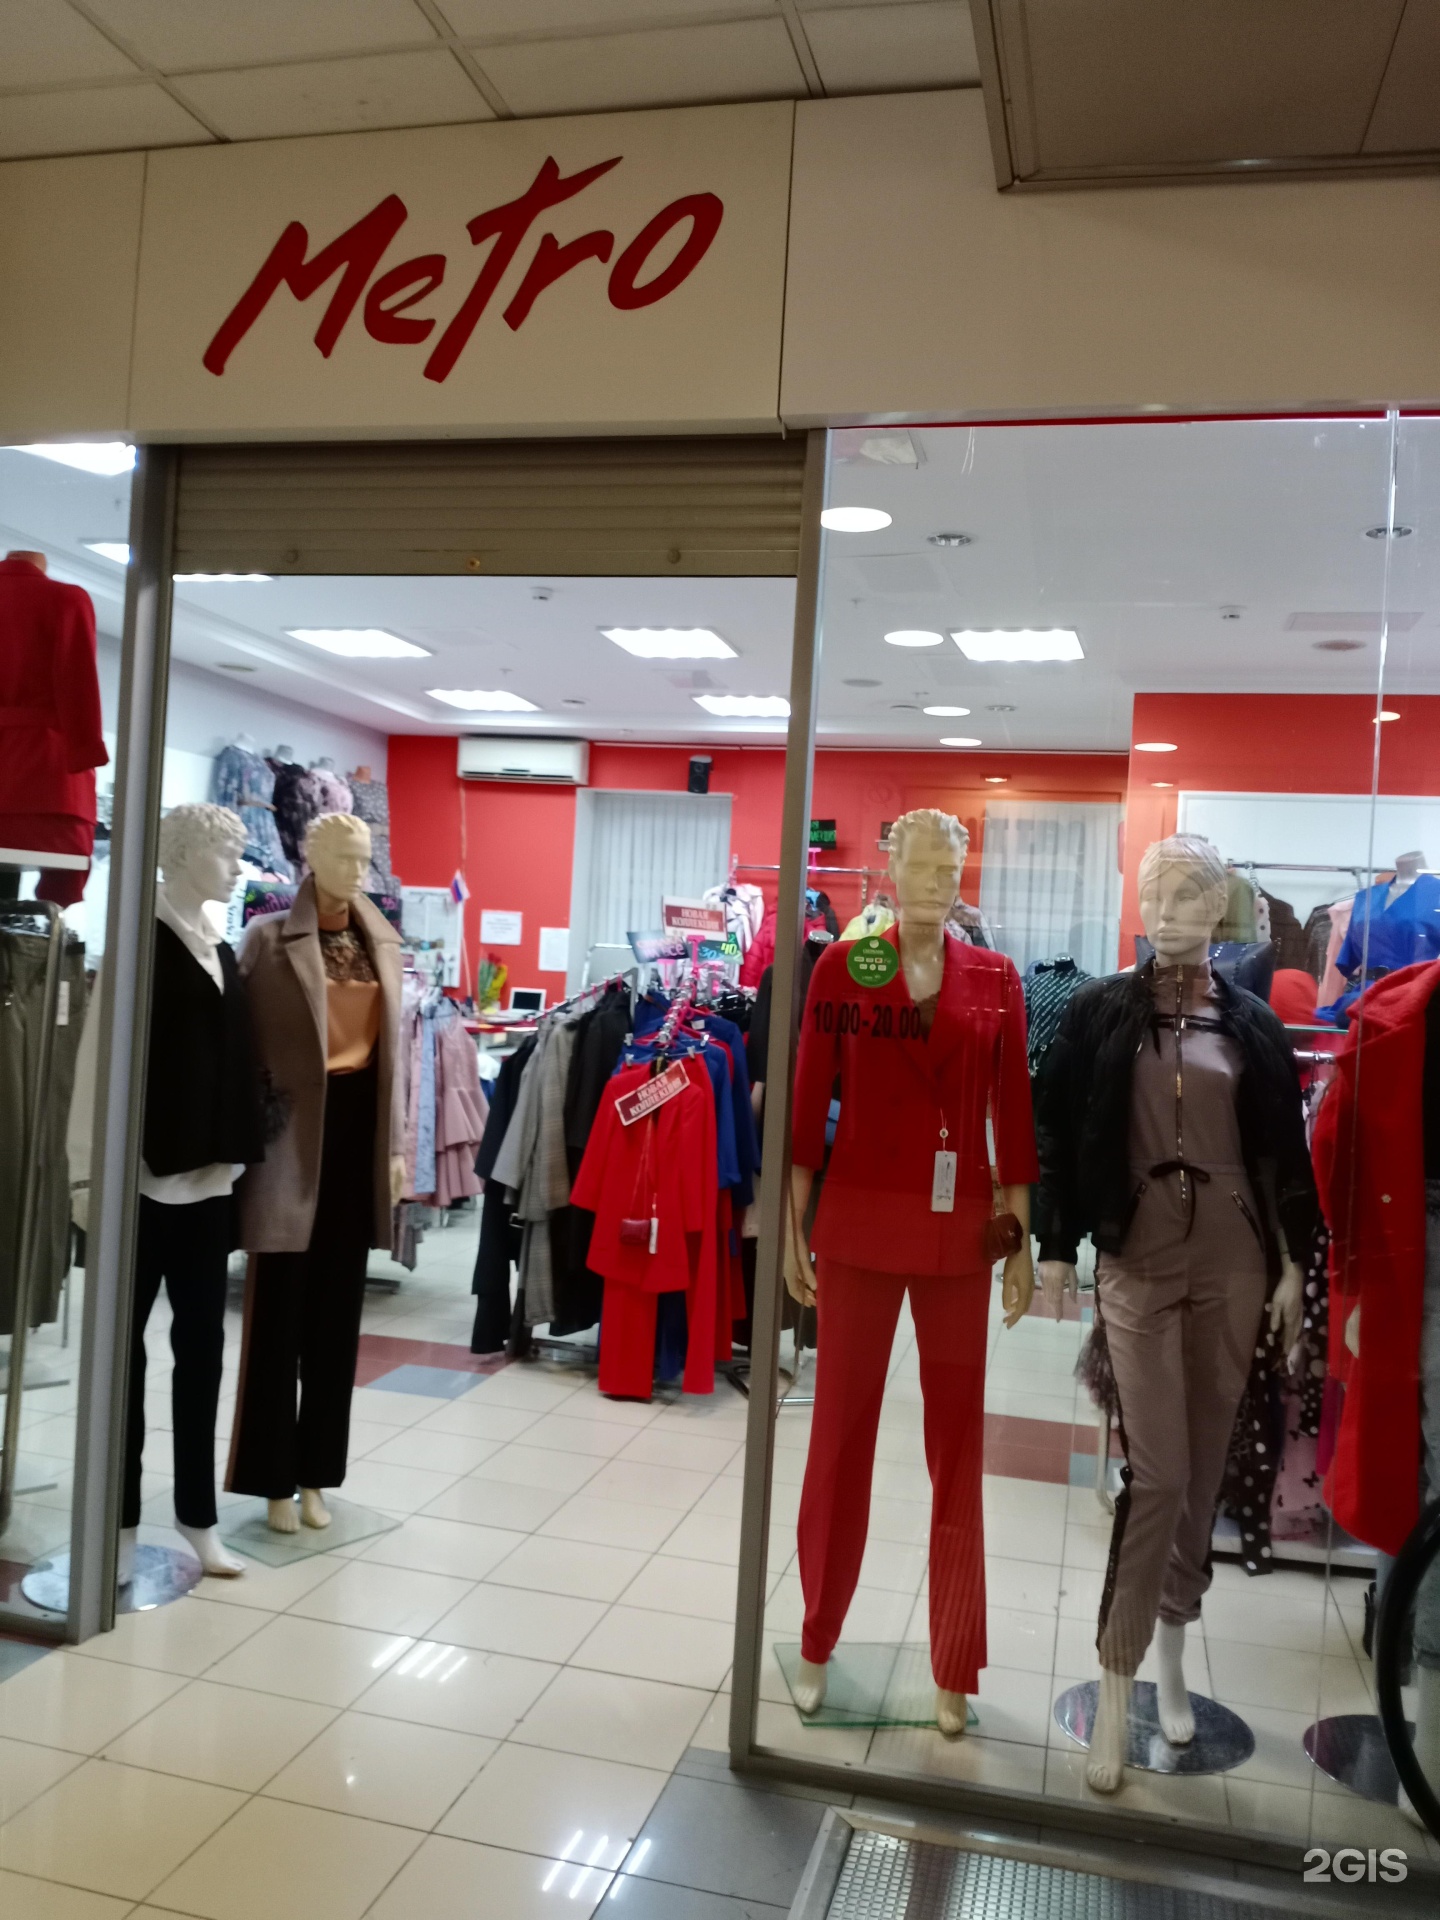 Магазин Женской Одежды Метро